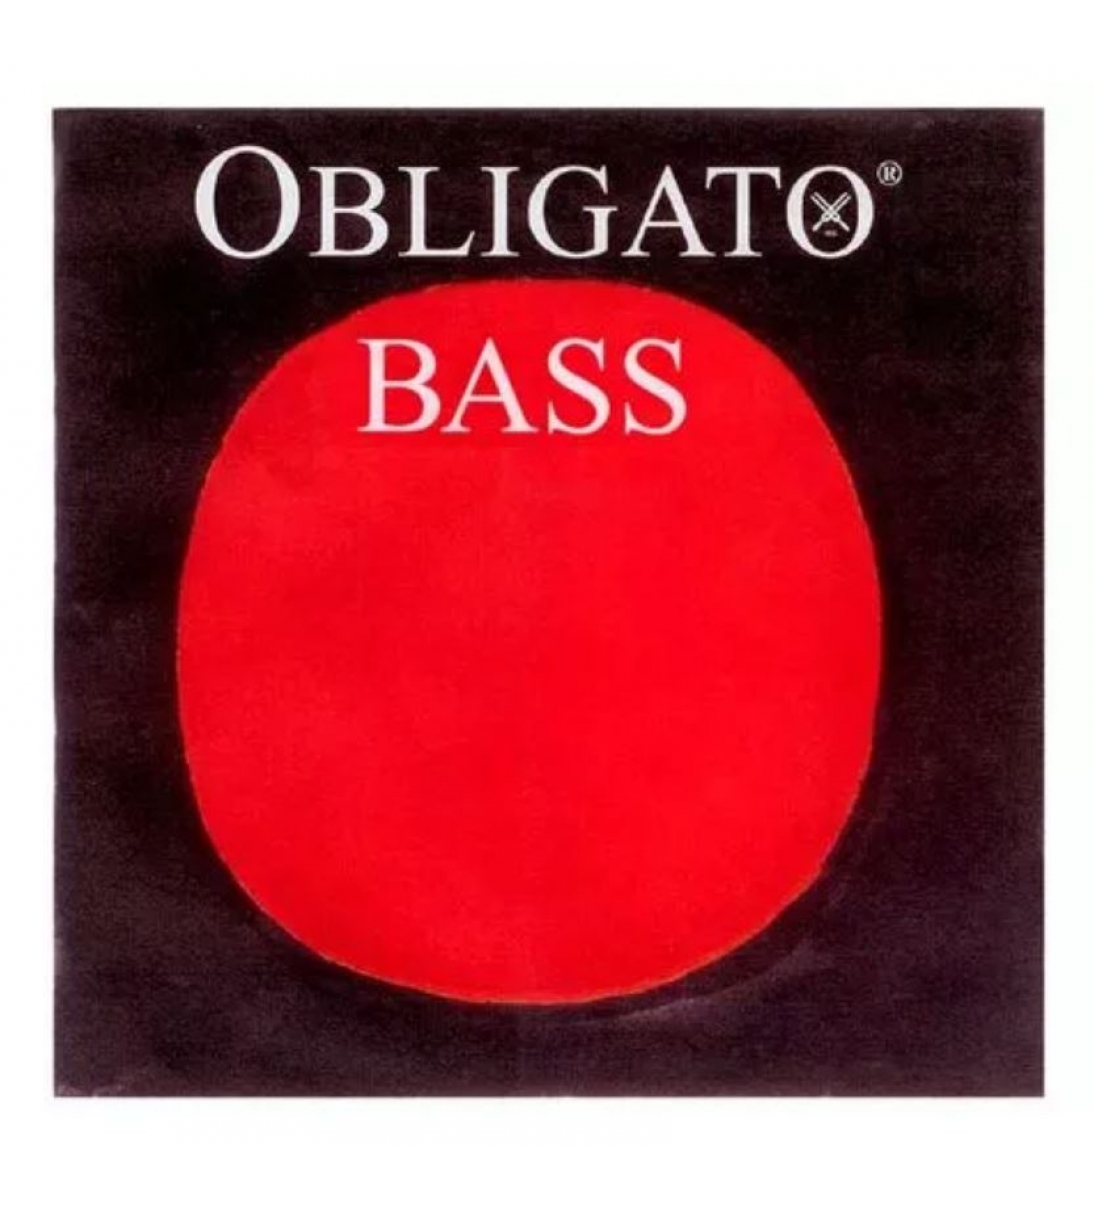 Obligato Bass Cordiera per Contrabbasso 3/4